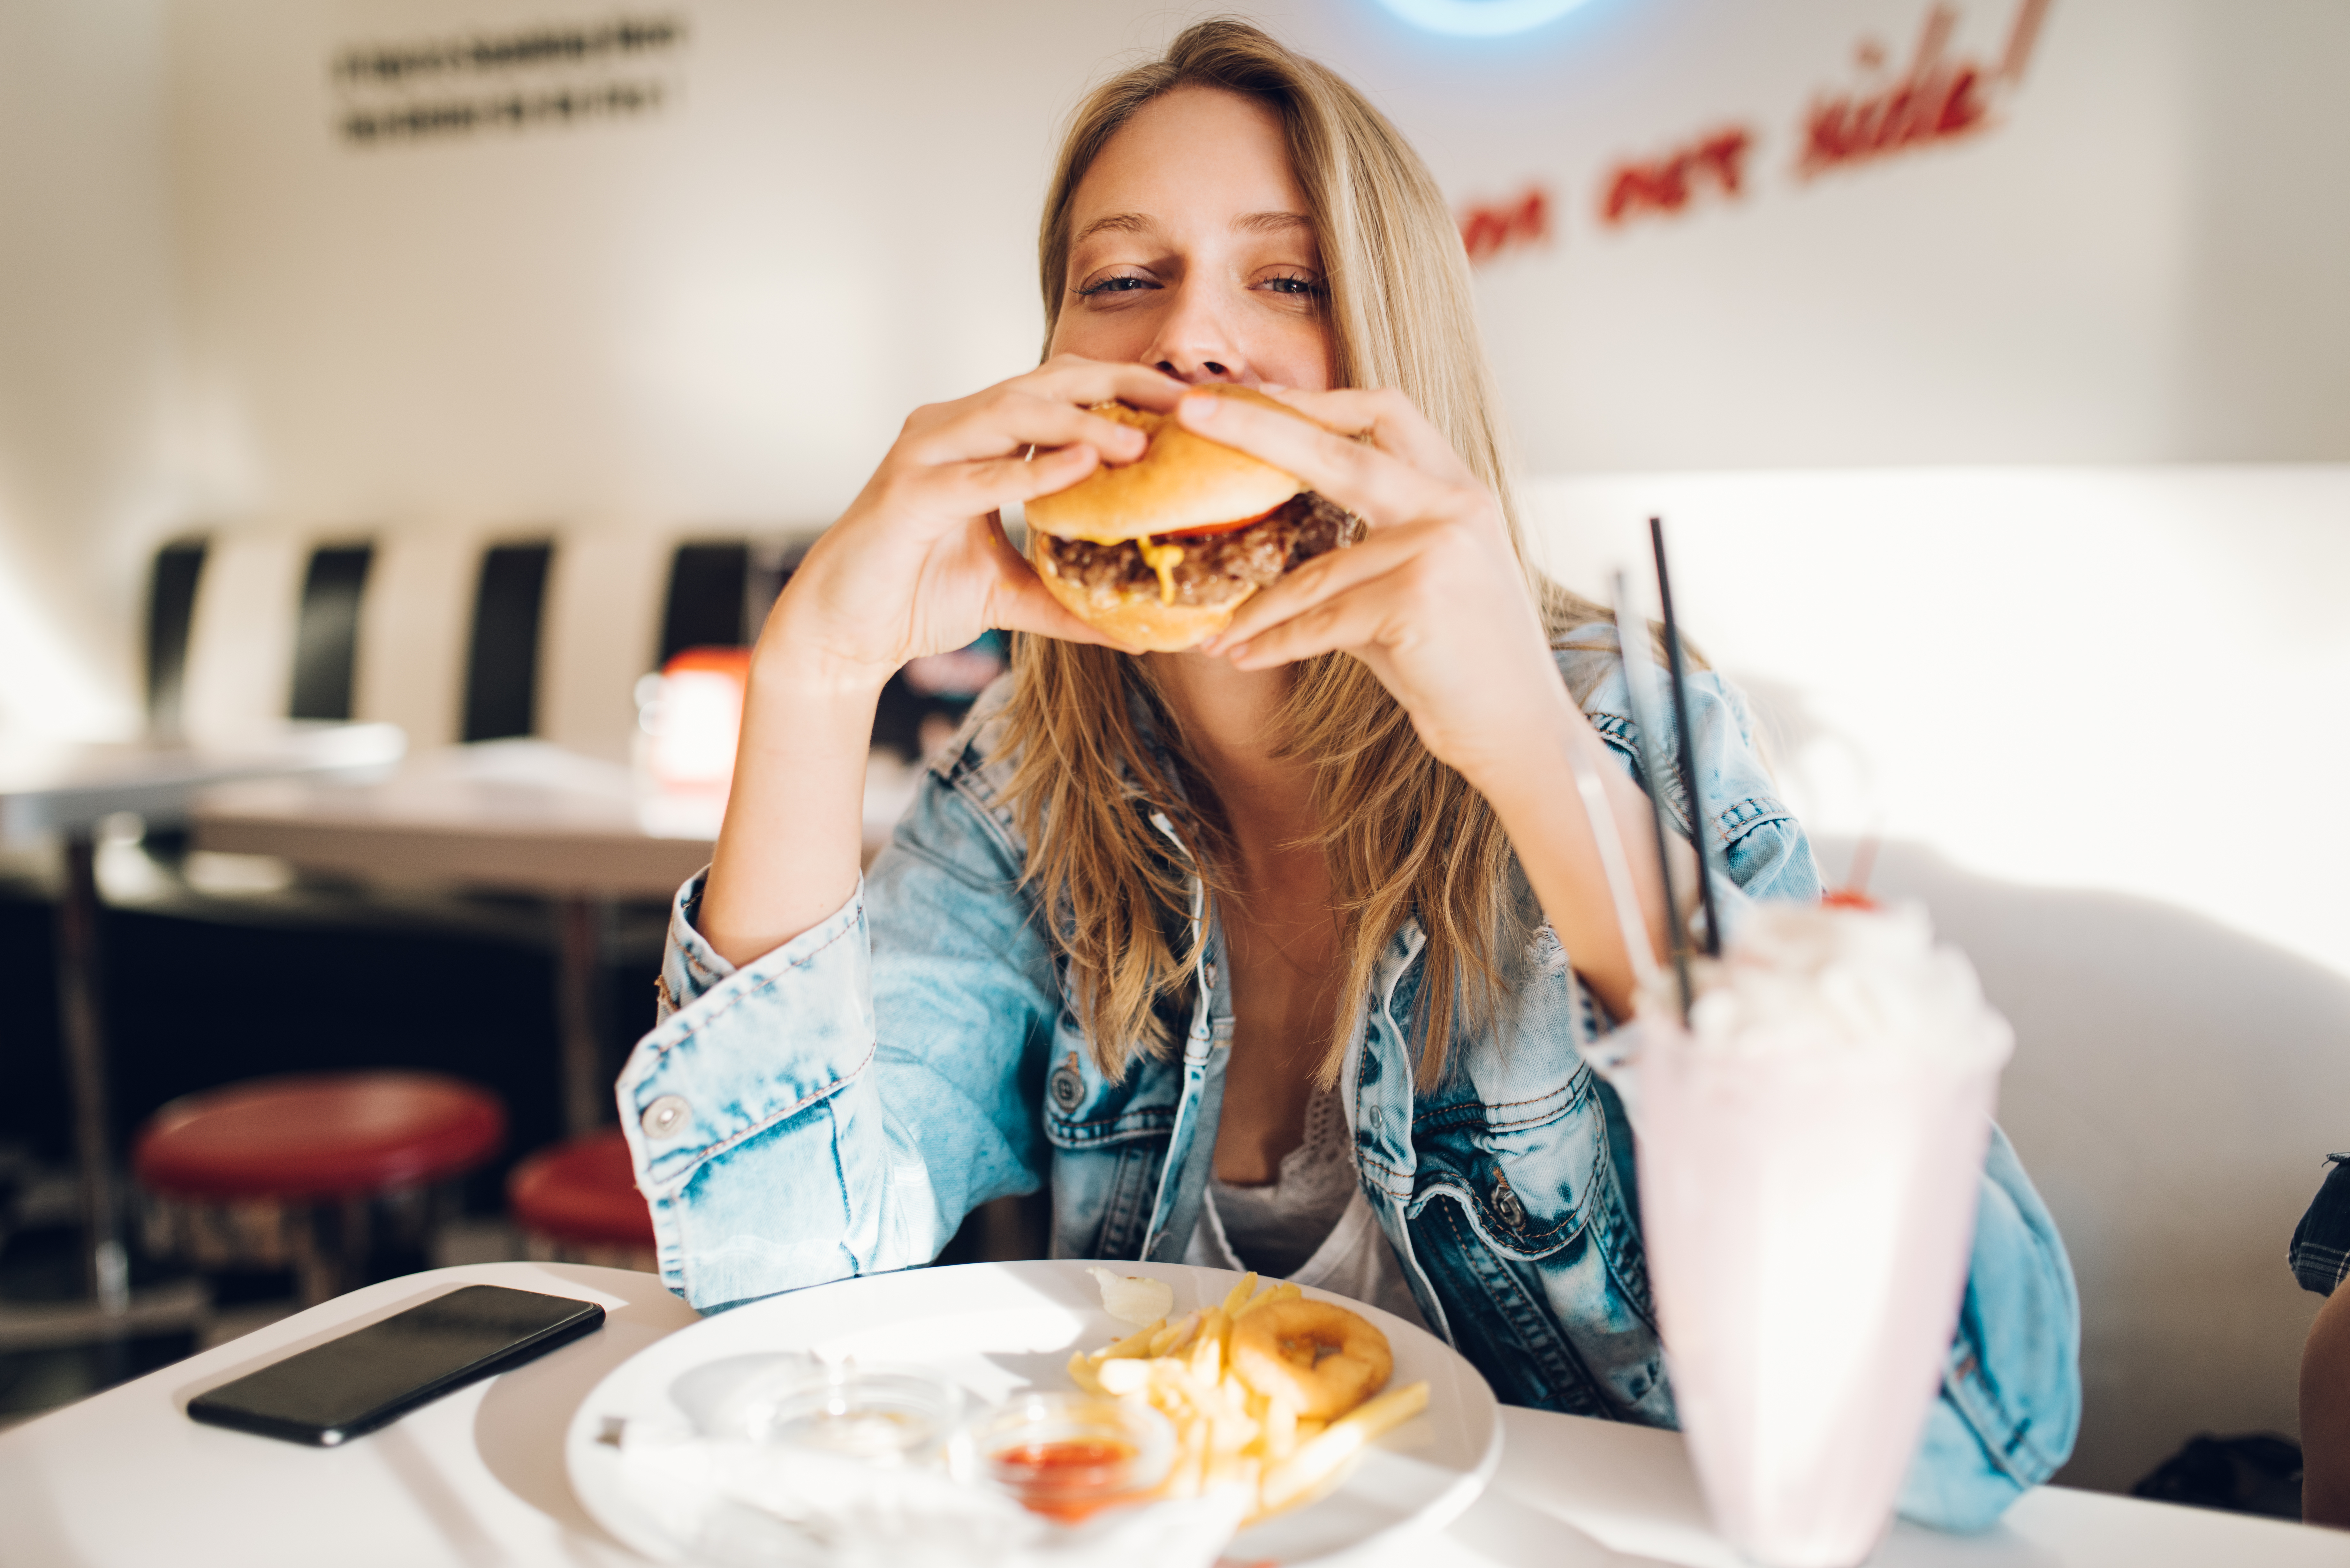 A woman eating a burger | Source: Shutterstock